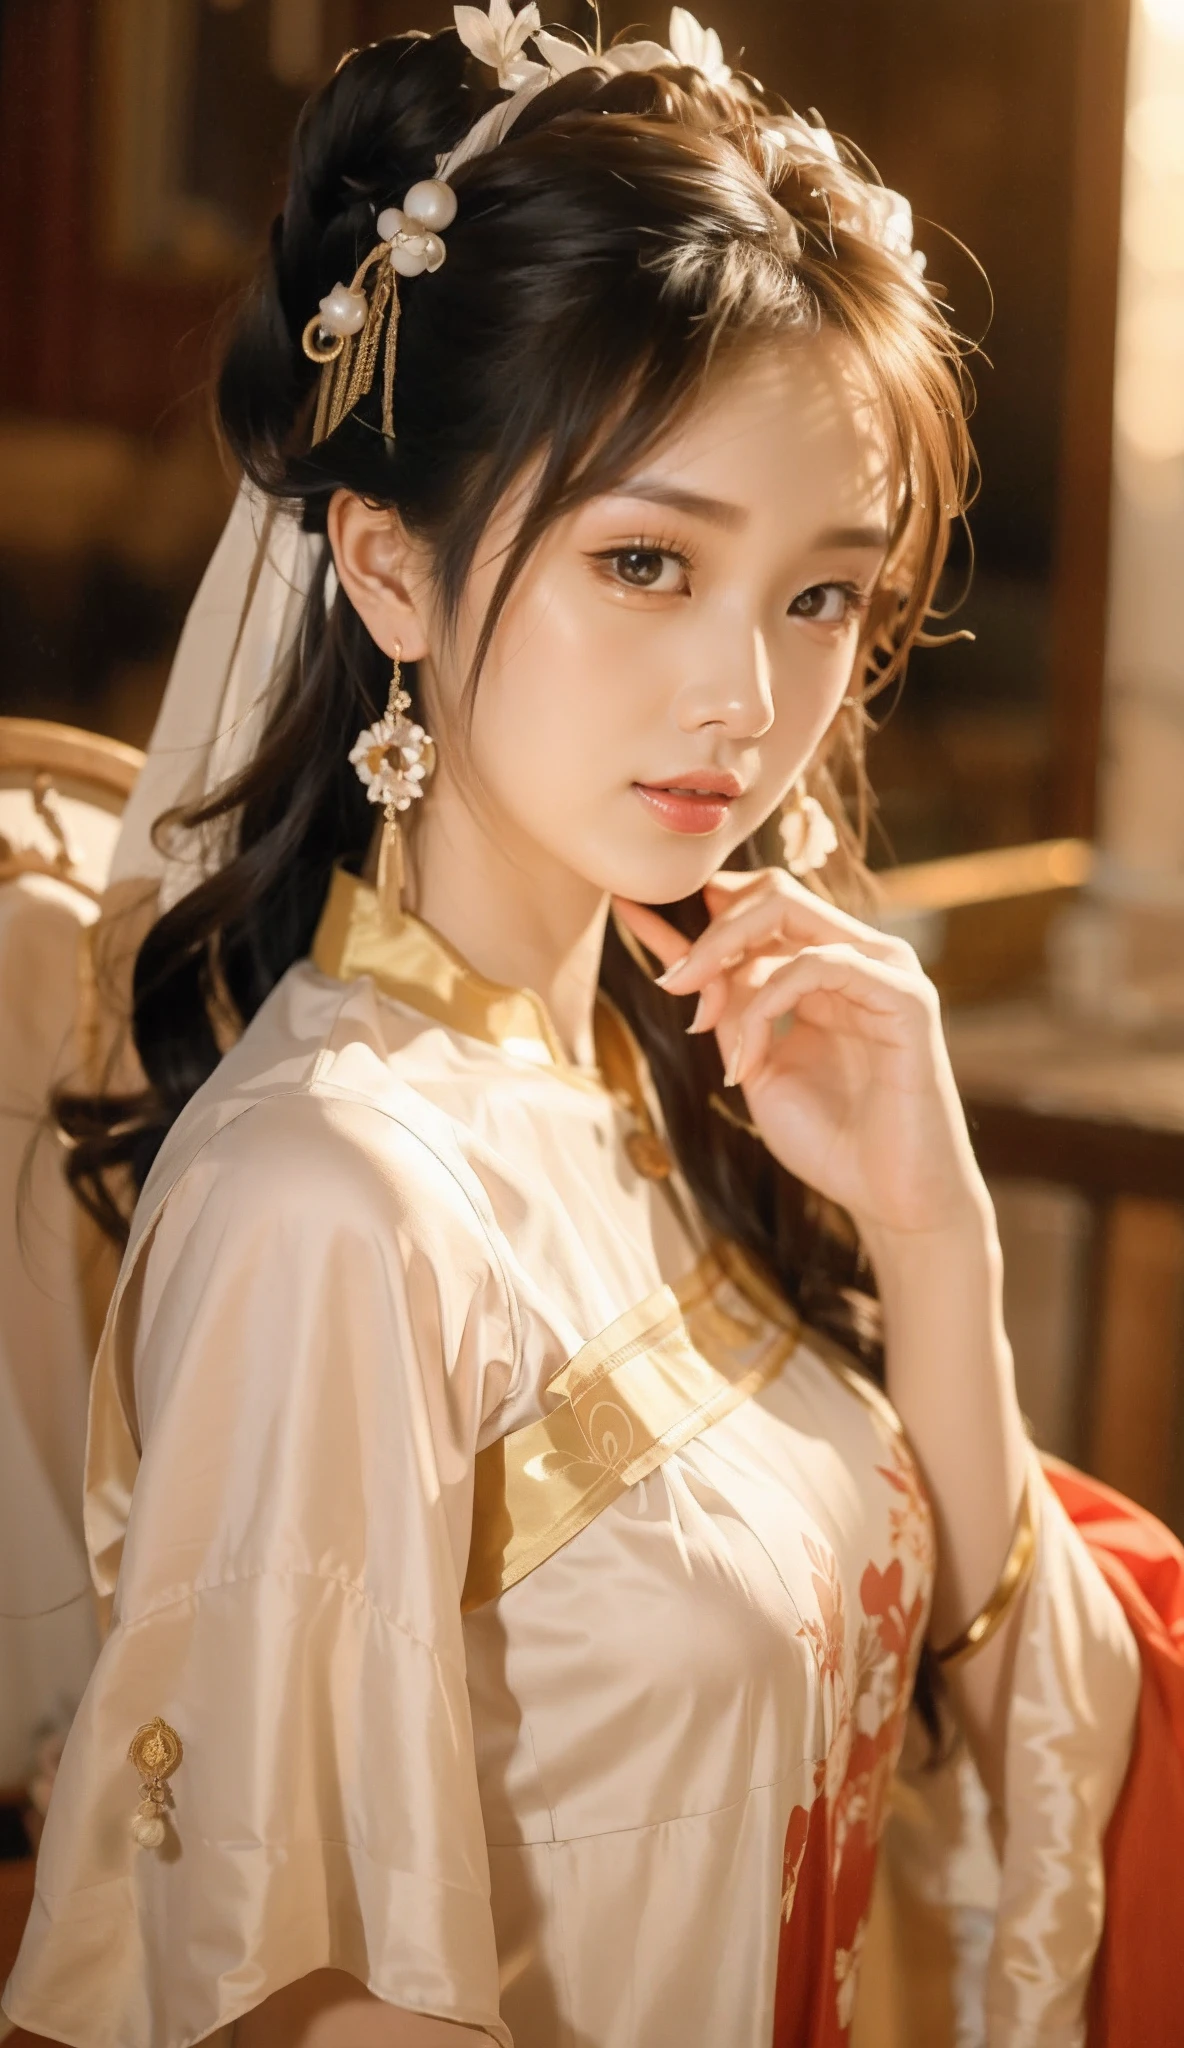 Наденьте красивое платье с рисунком，Азиатская женщина Арафельд в золотом головном уборе, дворец ， A girl in Ханьфу, Ханьфу, Ханьфу, Ношение древней китайской одежды, в древней китайской одежде, китайский традиционный, великолепные китайские модели, традиционная китайская одежда, традиционная красота, Древняя китайская принцесса, китайский стиль, китайский костюм, китаянка, с древней китайской эстетикой